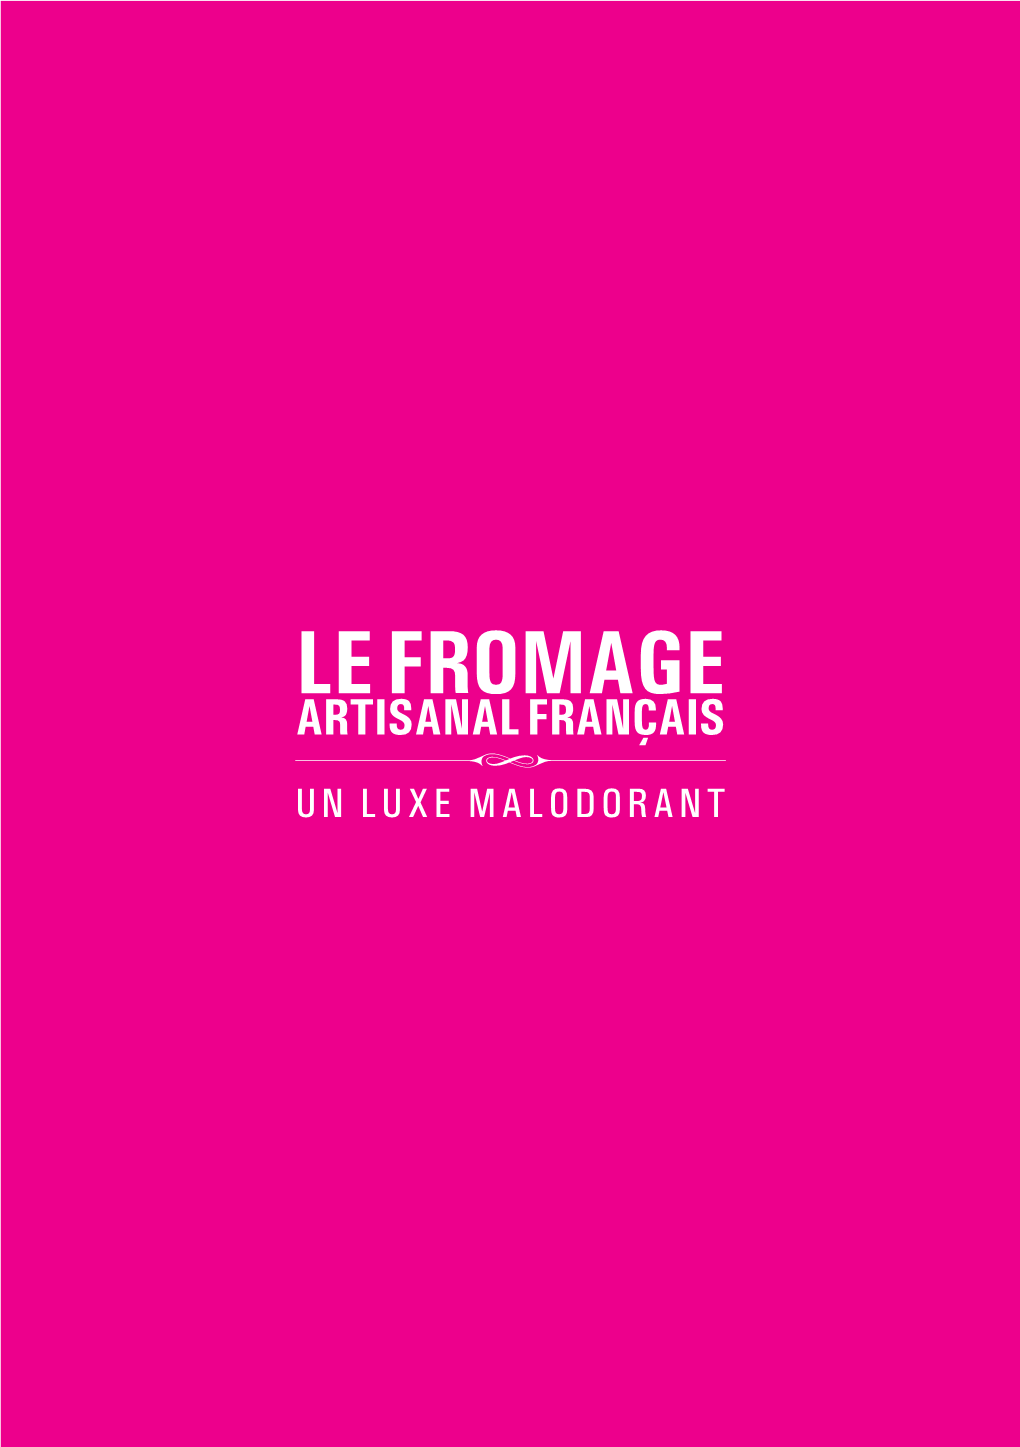 Le Fromage Artisanal Français Un Luxe Malodorant 2 3 Le Fromage Artisanal Français Un Luxe Malodorant Florian Branchet